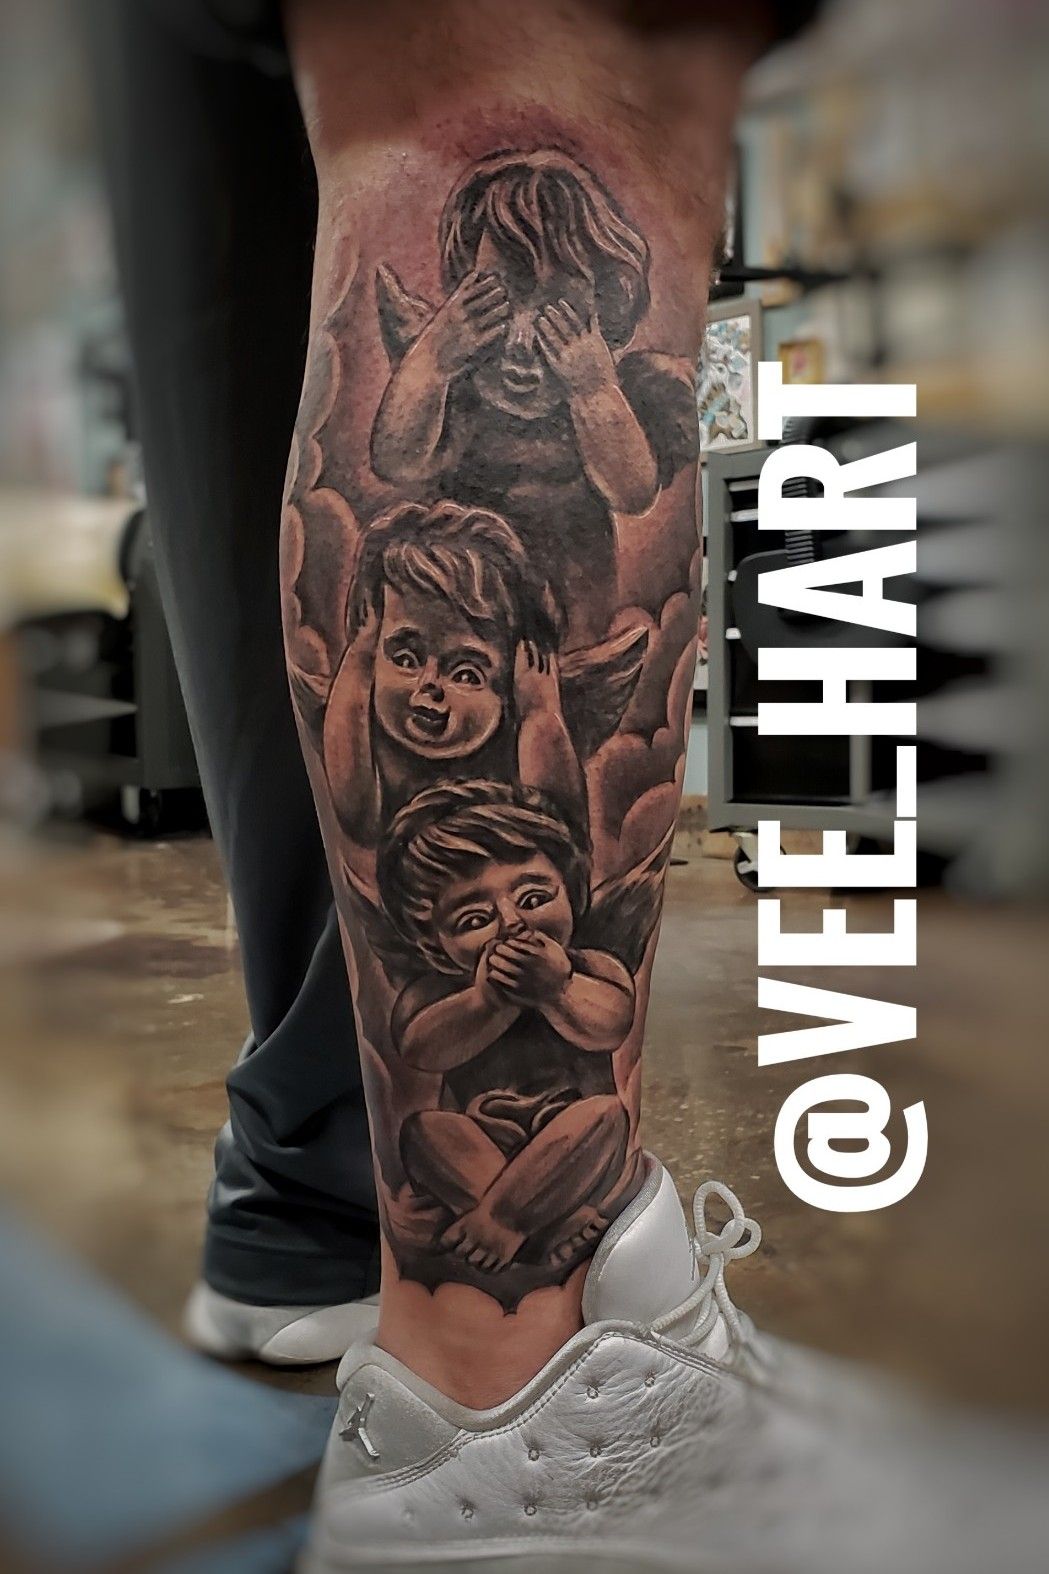 Odell Beckham Jrs leg is a tattoo work of art